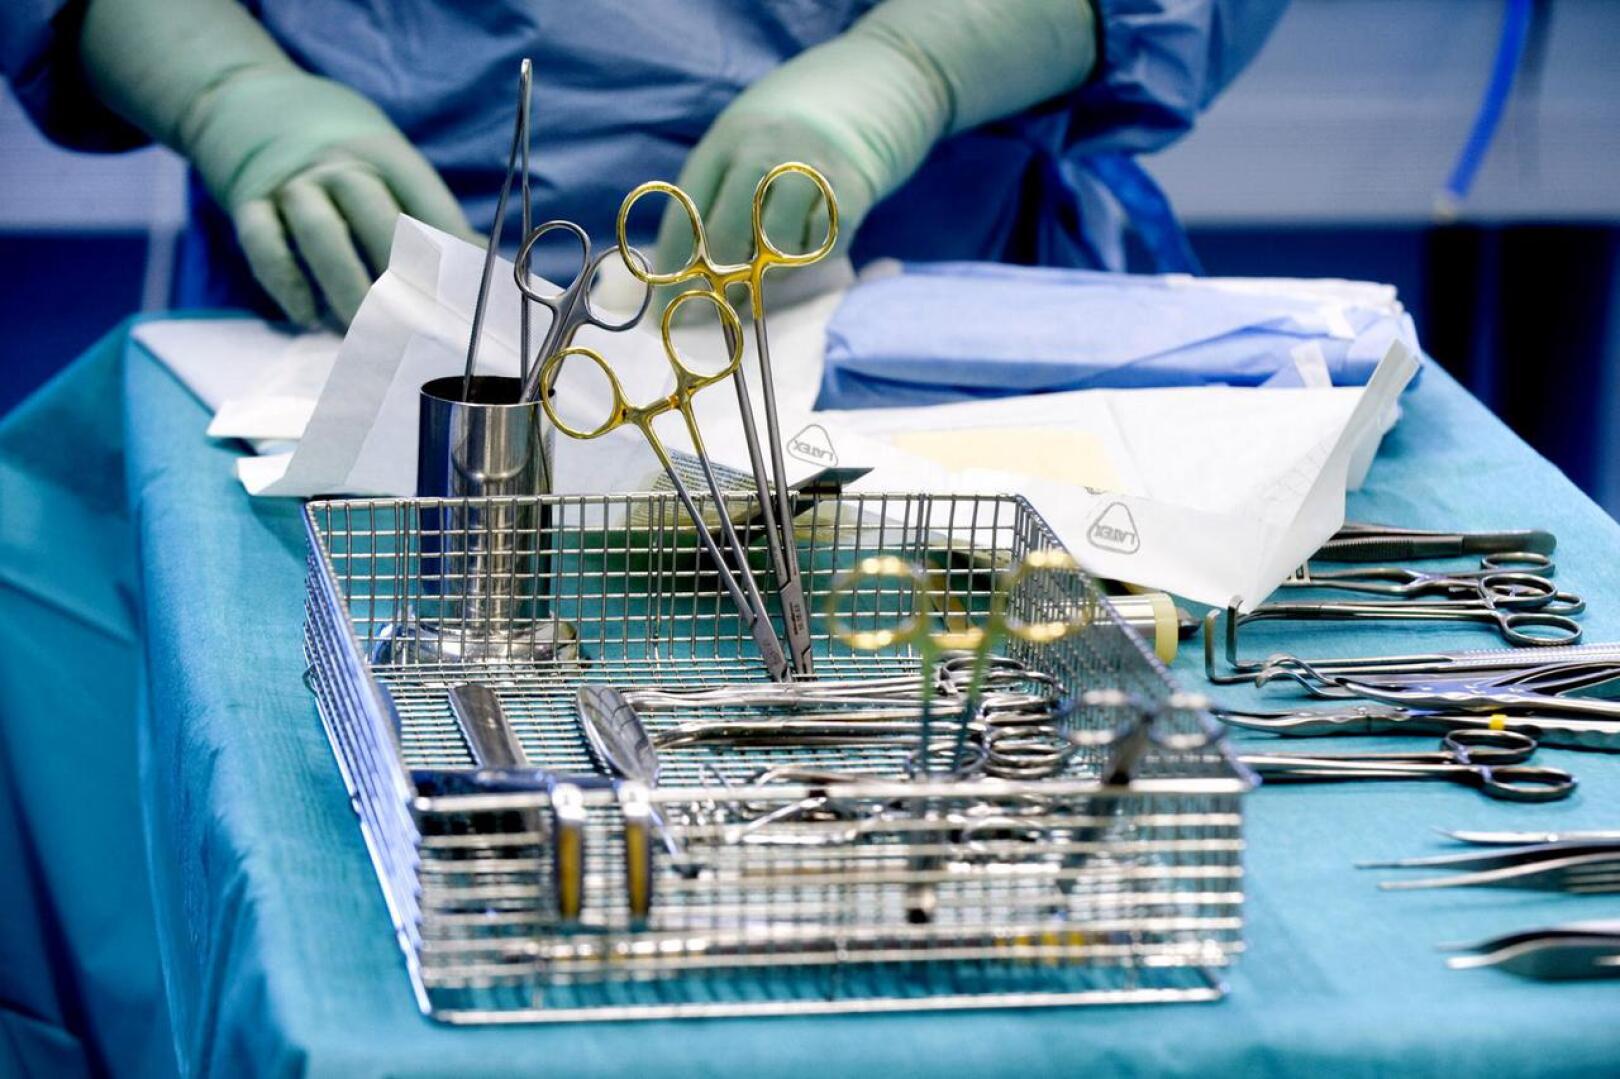 Leikkausmääriä ei enää tuijoteta yhtä tarkasti sairaalatoiminnan hyväksymisessä, jos Krista Kiurun muutosesitys menee läpi. 